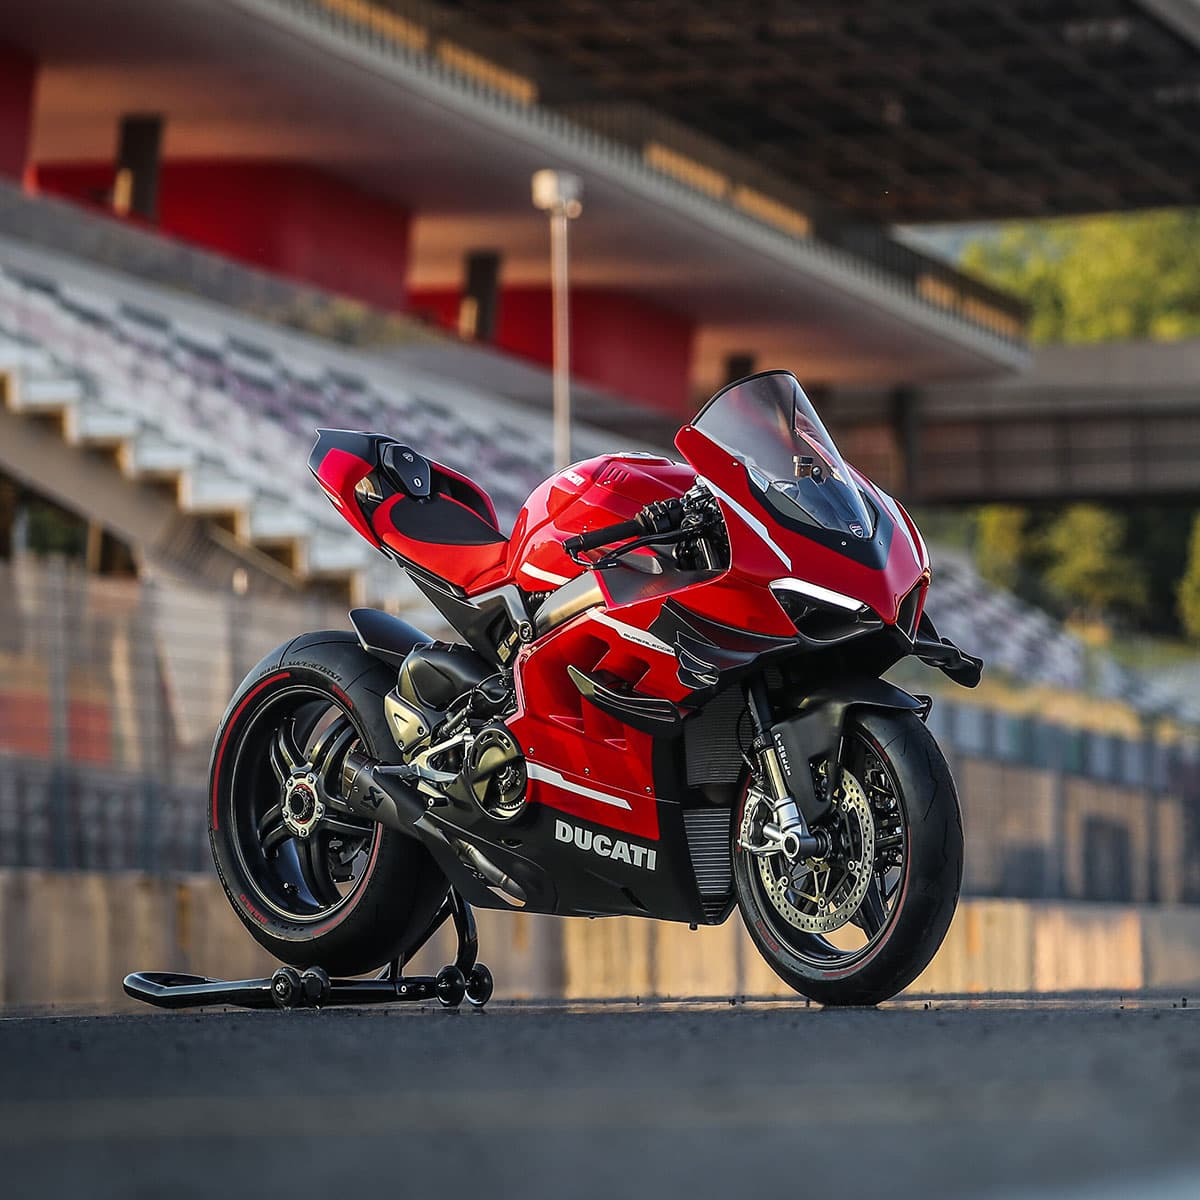 Pro Twins Ducati Offers